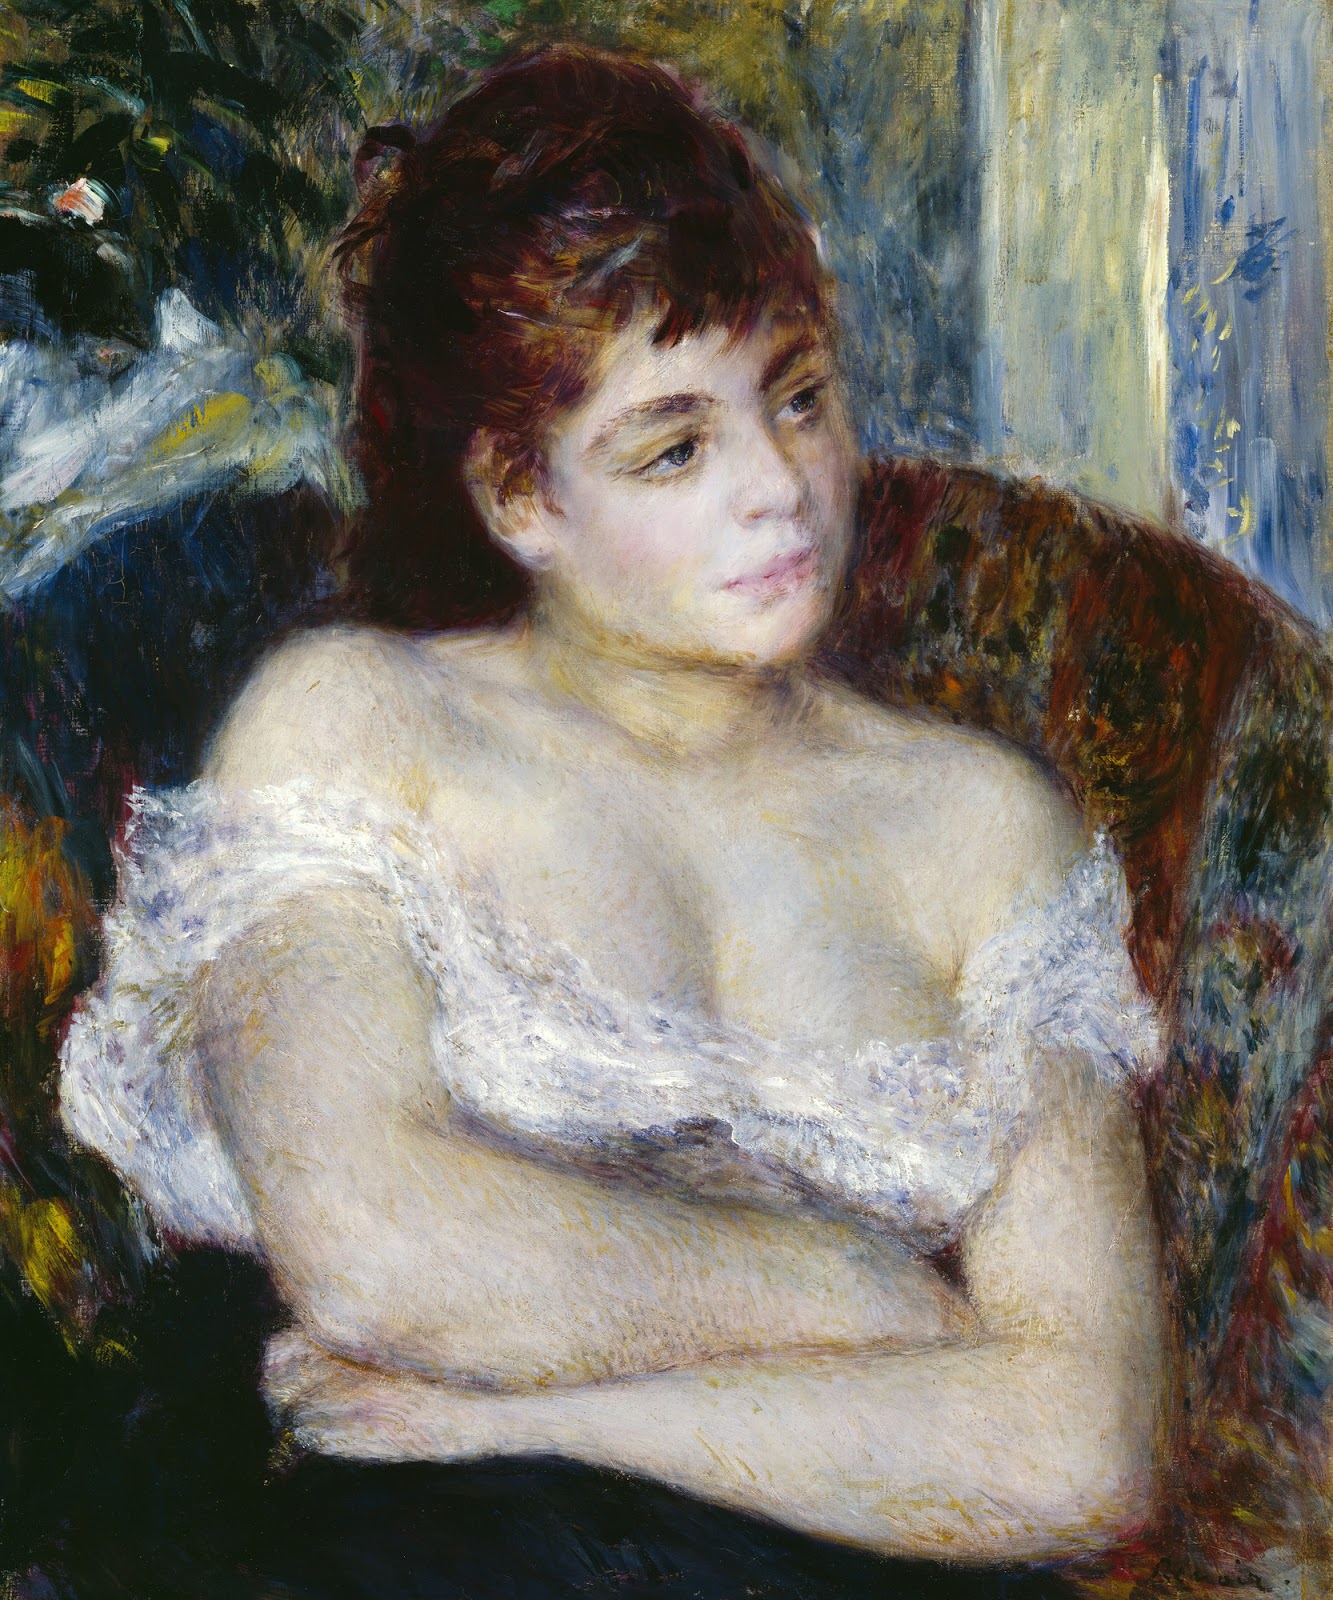 Pierre+Auguste+Renoir-1841-1-19 (891).jpg